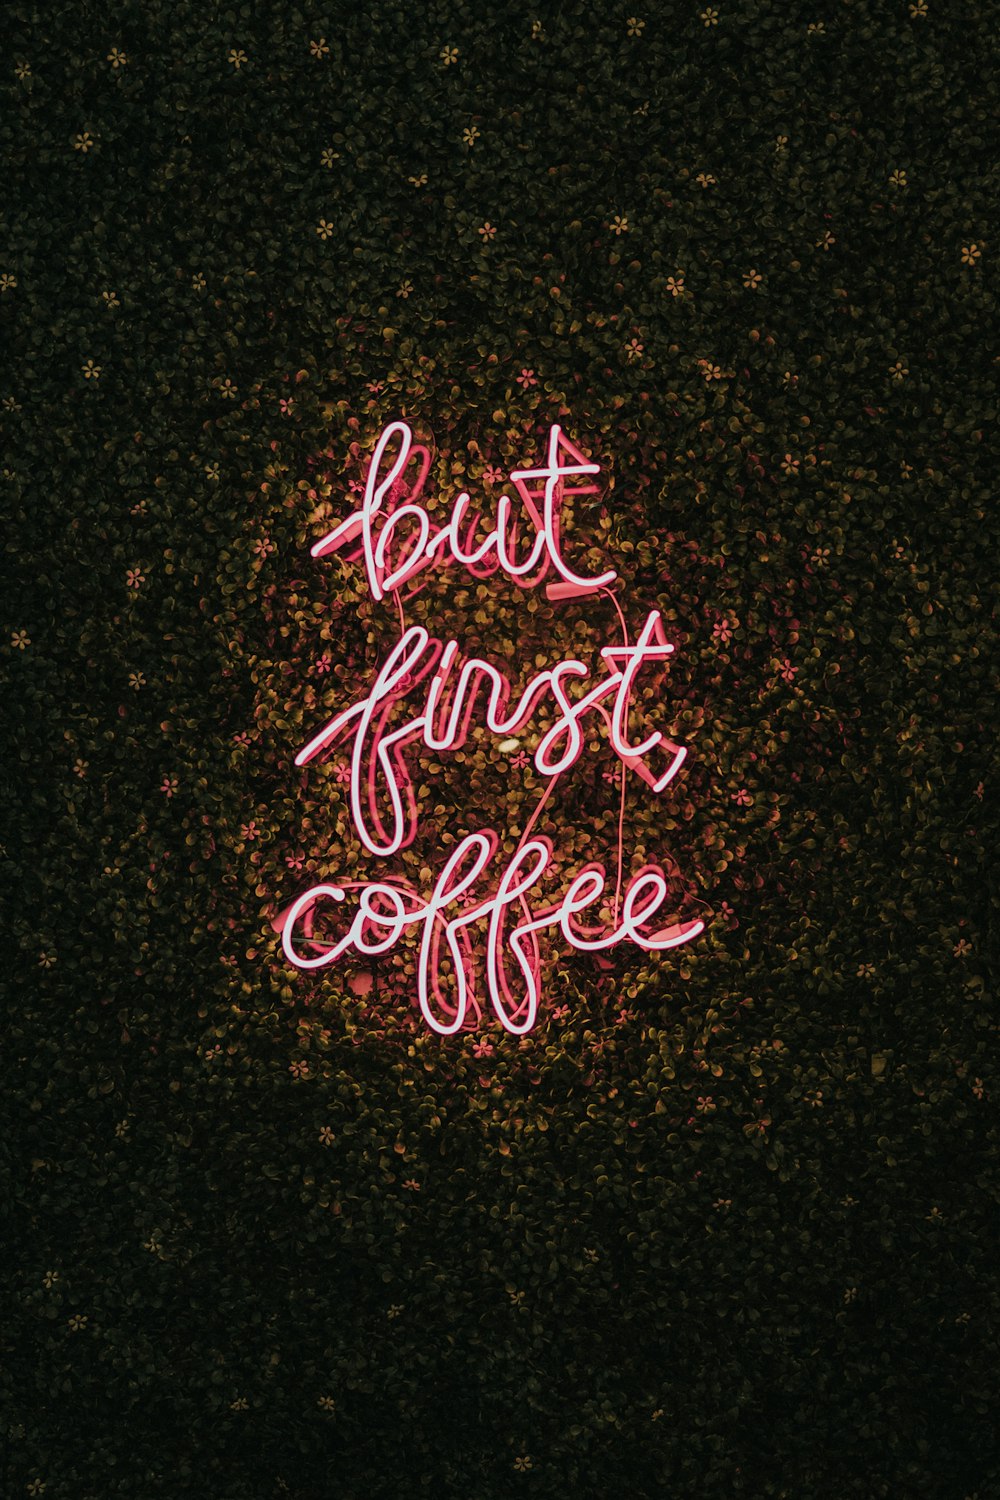 mas primeiro café